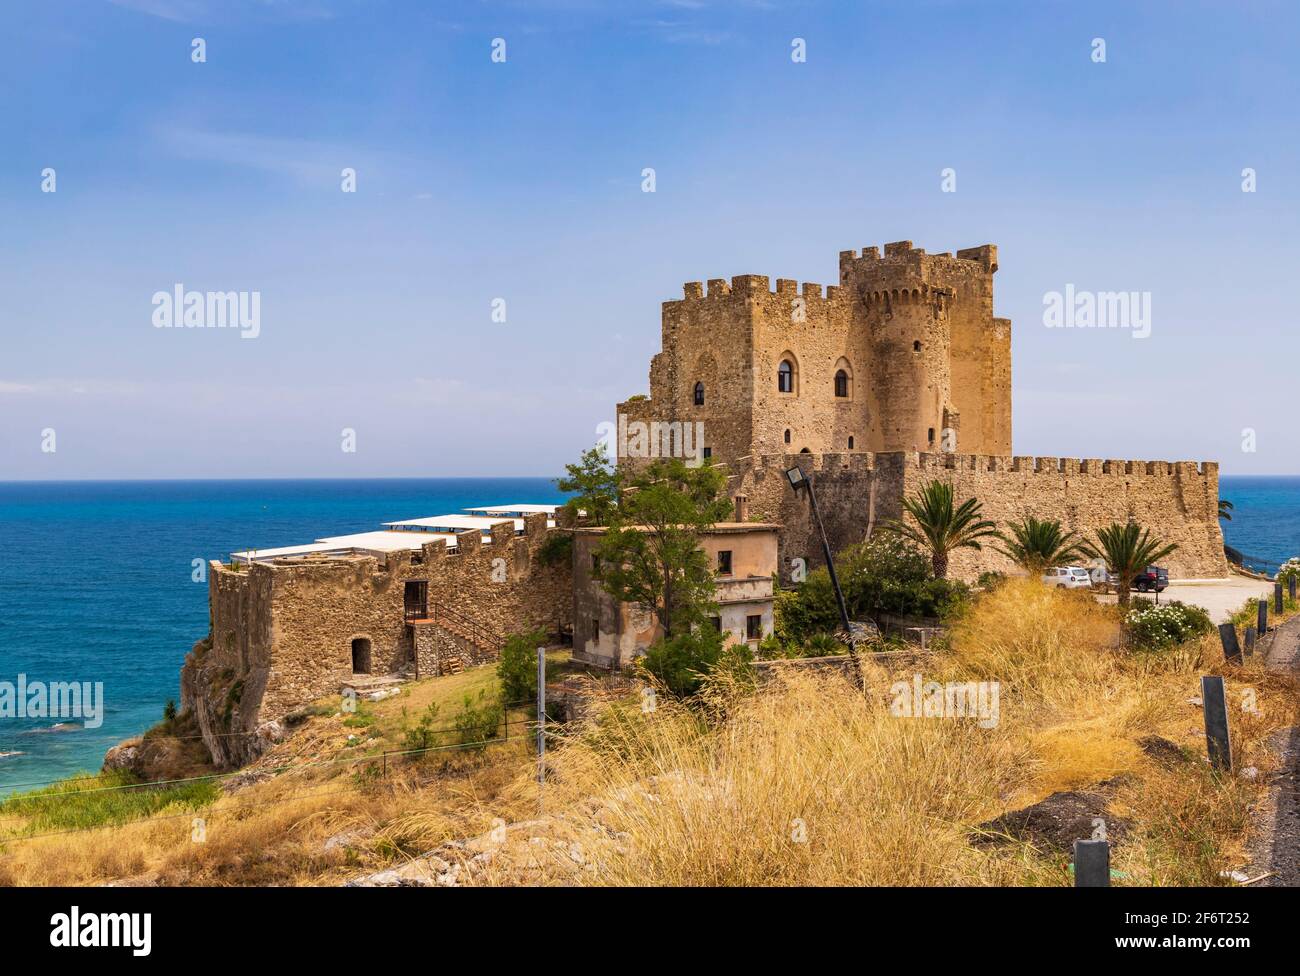 Castello Federiciano in Cosenza province, Calabria, Italy Stock Photo - Alamy